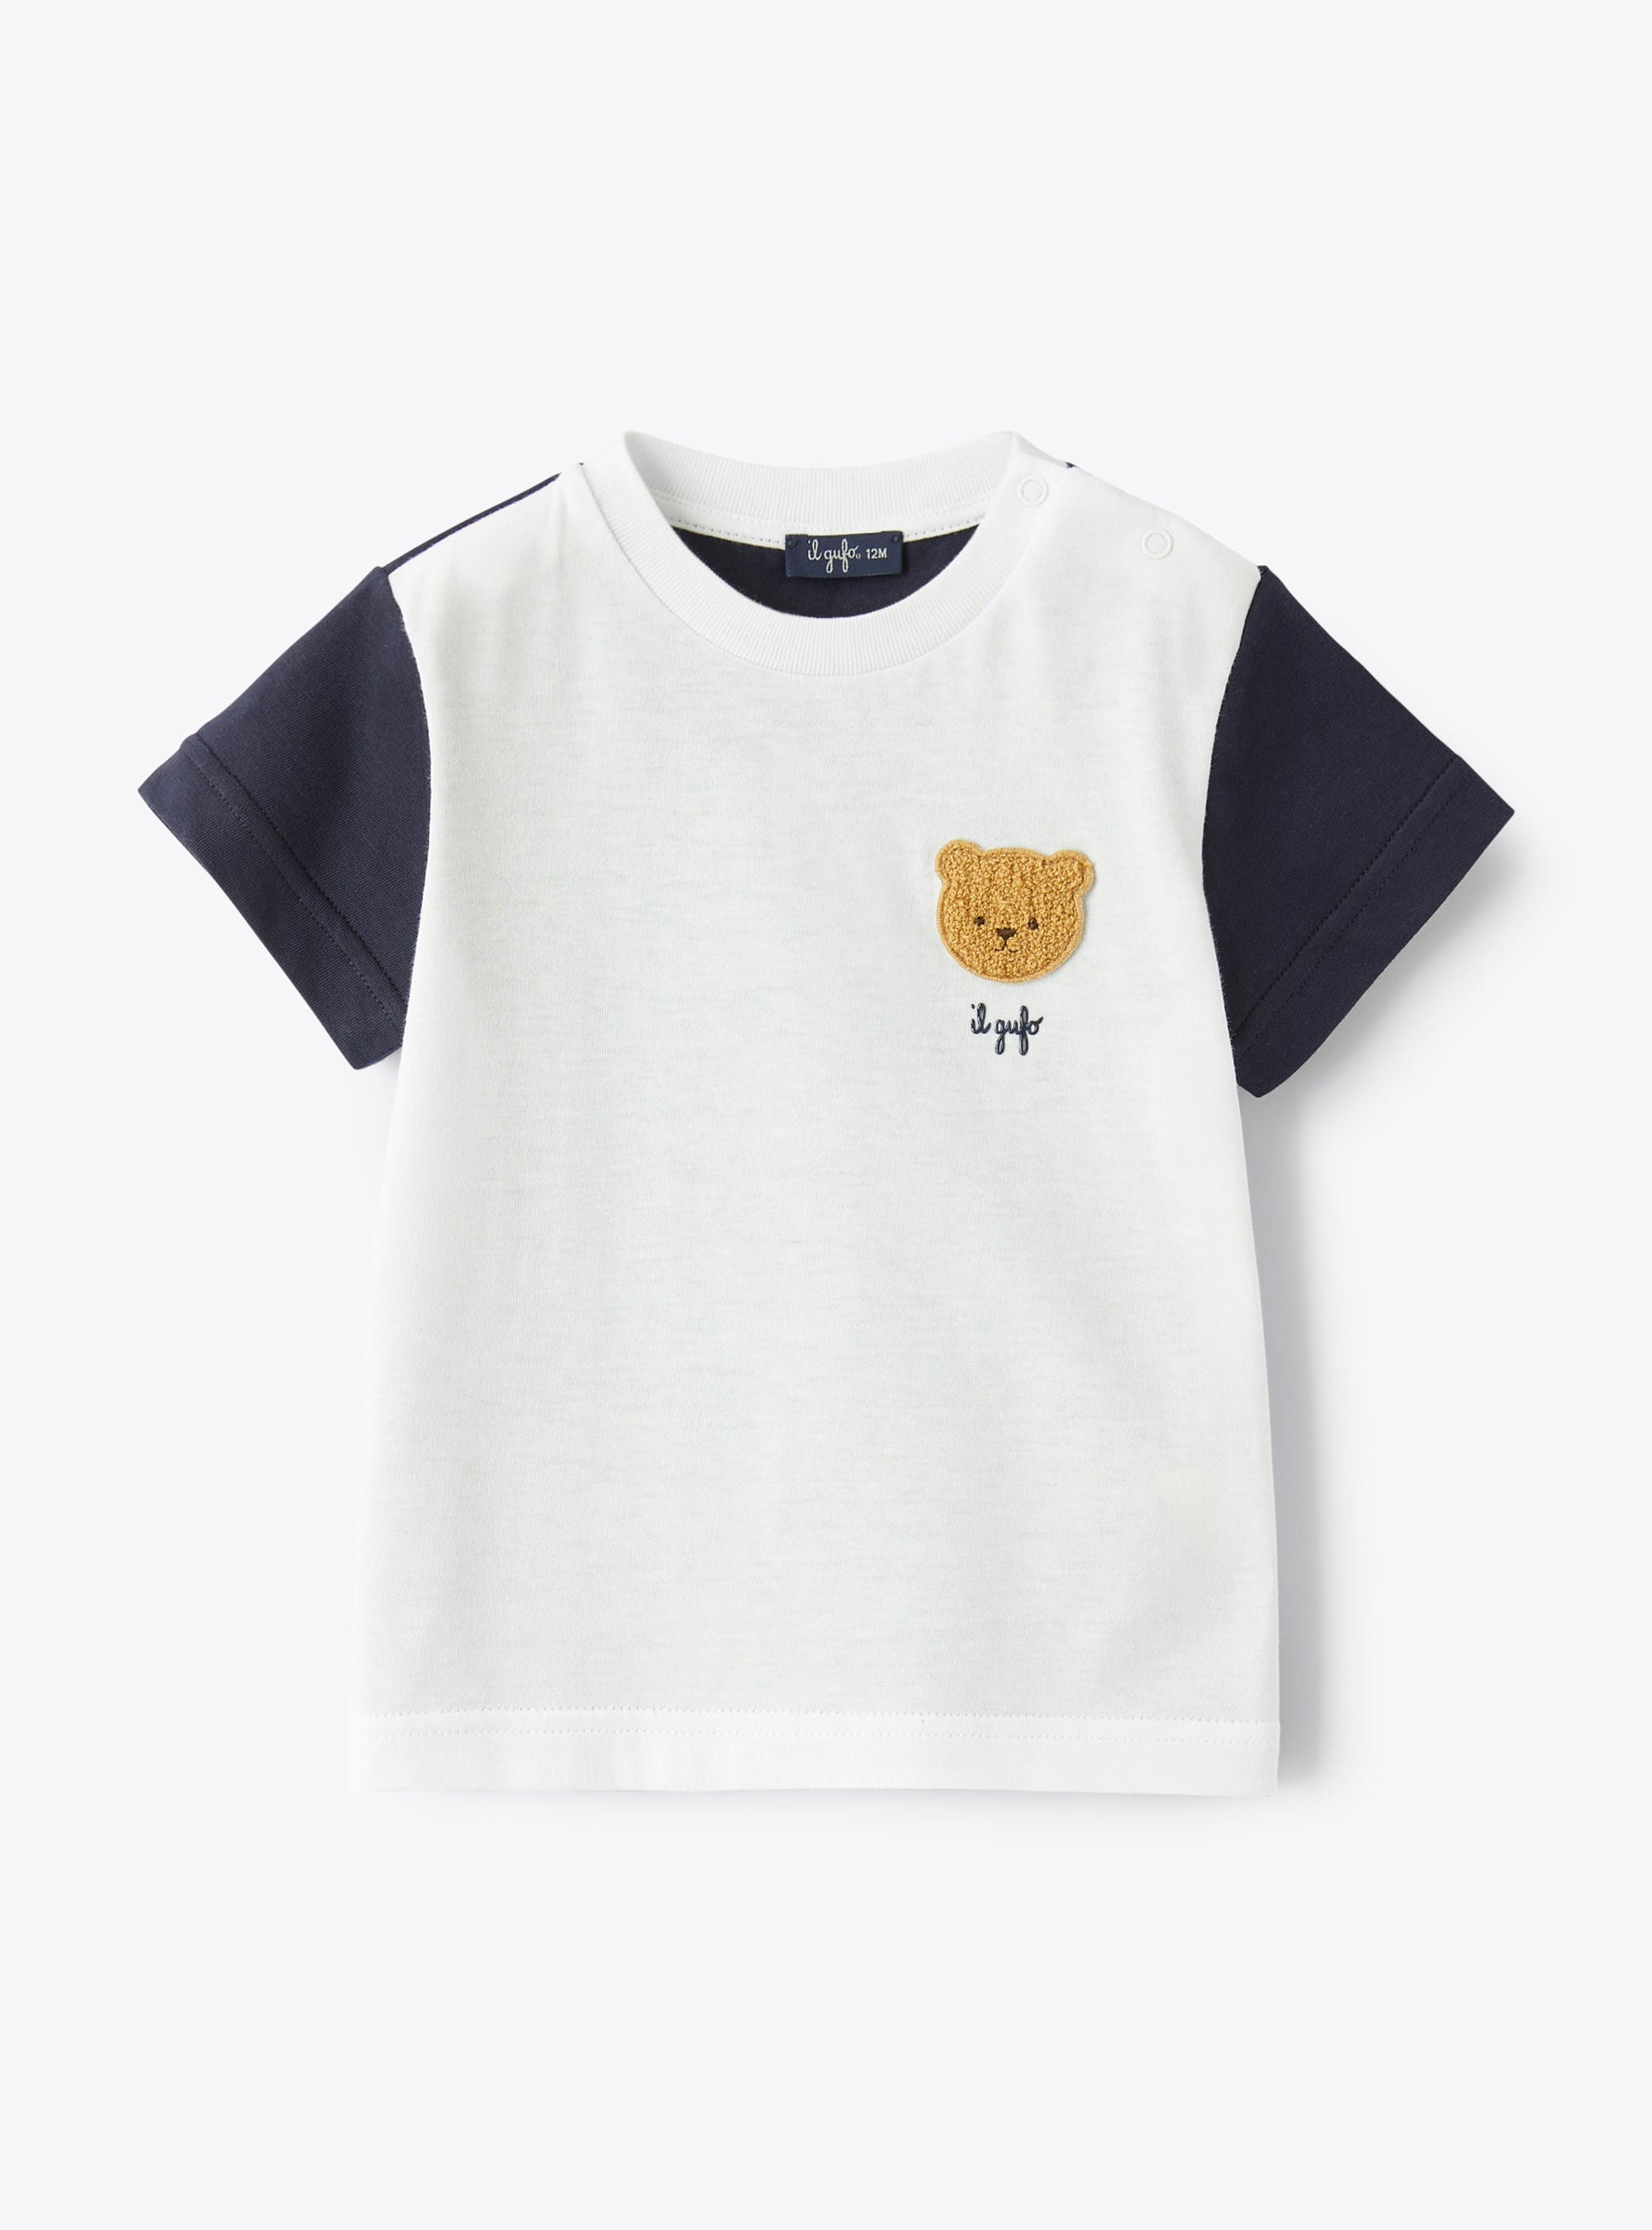 Двухцветная футболка для новорожденного, с аппликацией «Медвежонок» - Футболки - Il Gufo